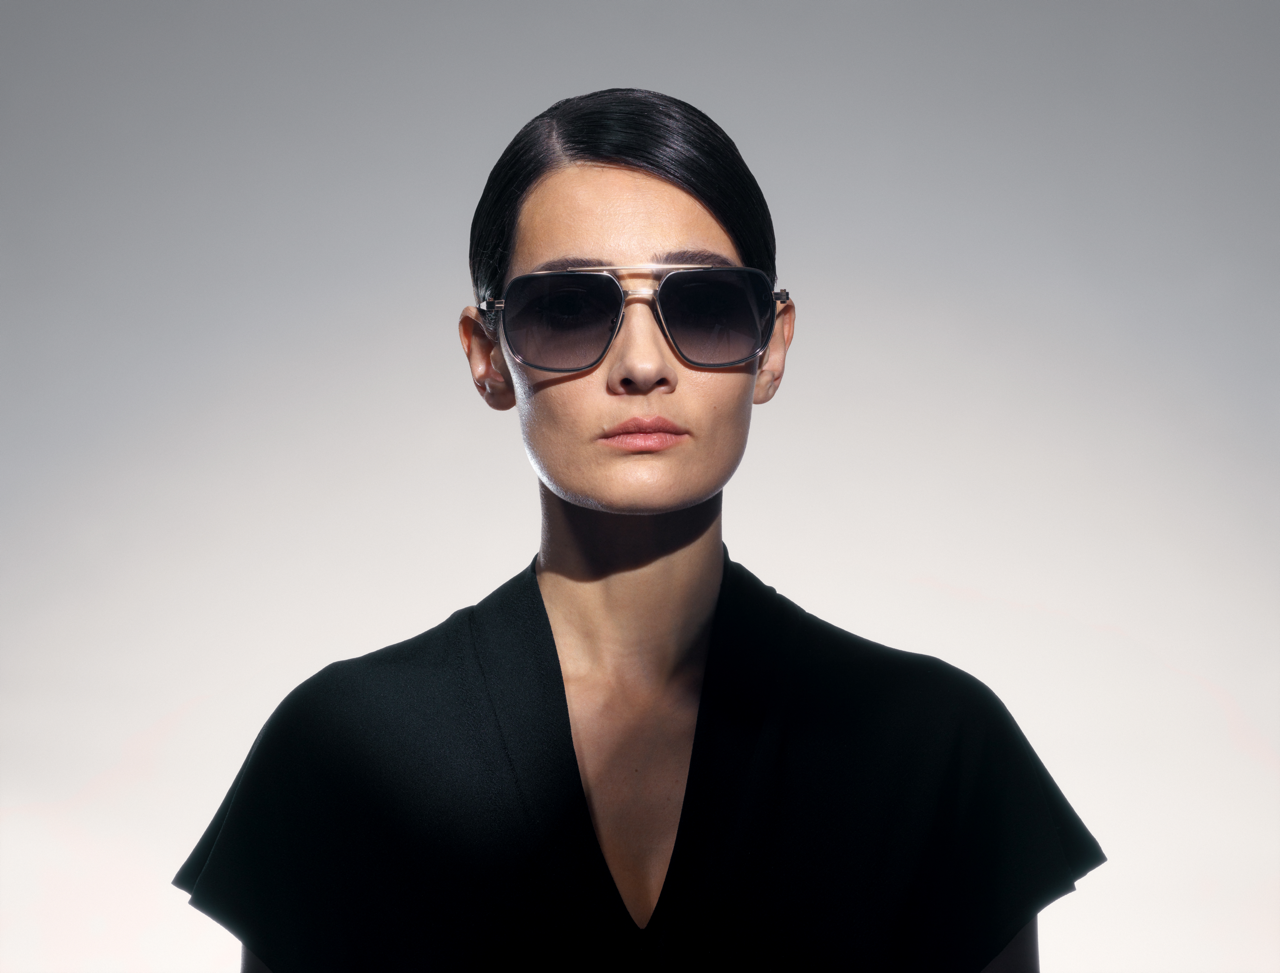 akoni pathfinder sunglasses lifestyle front female